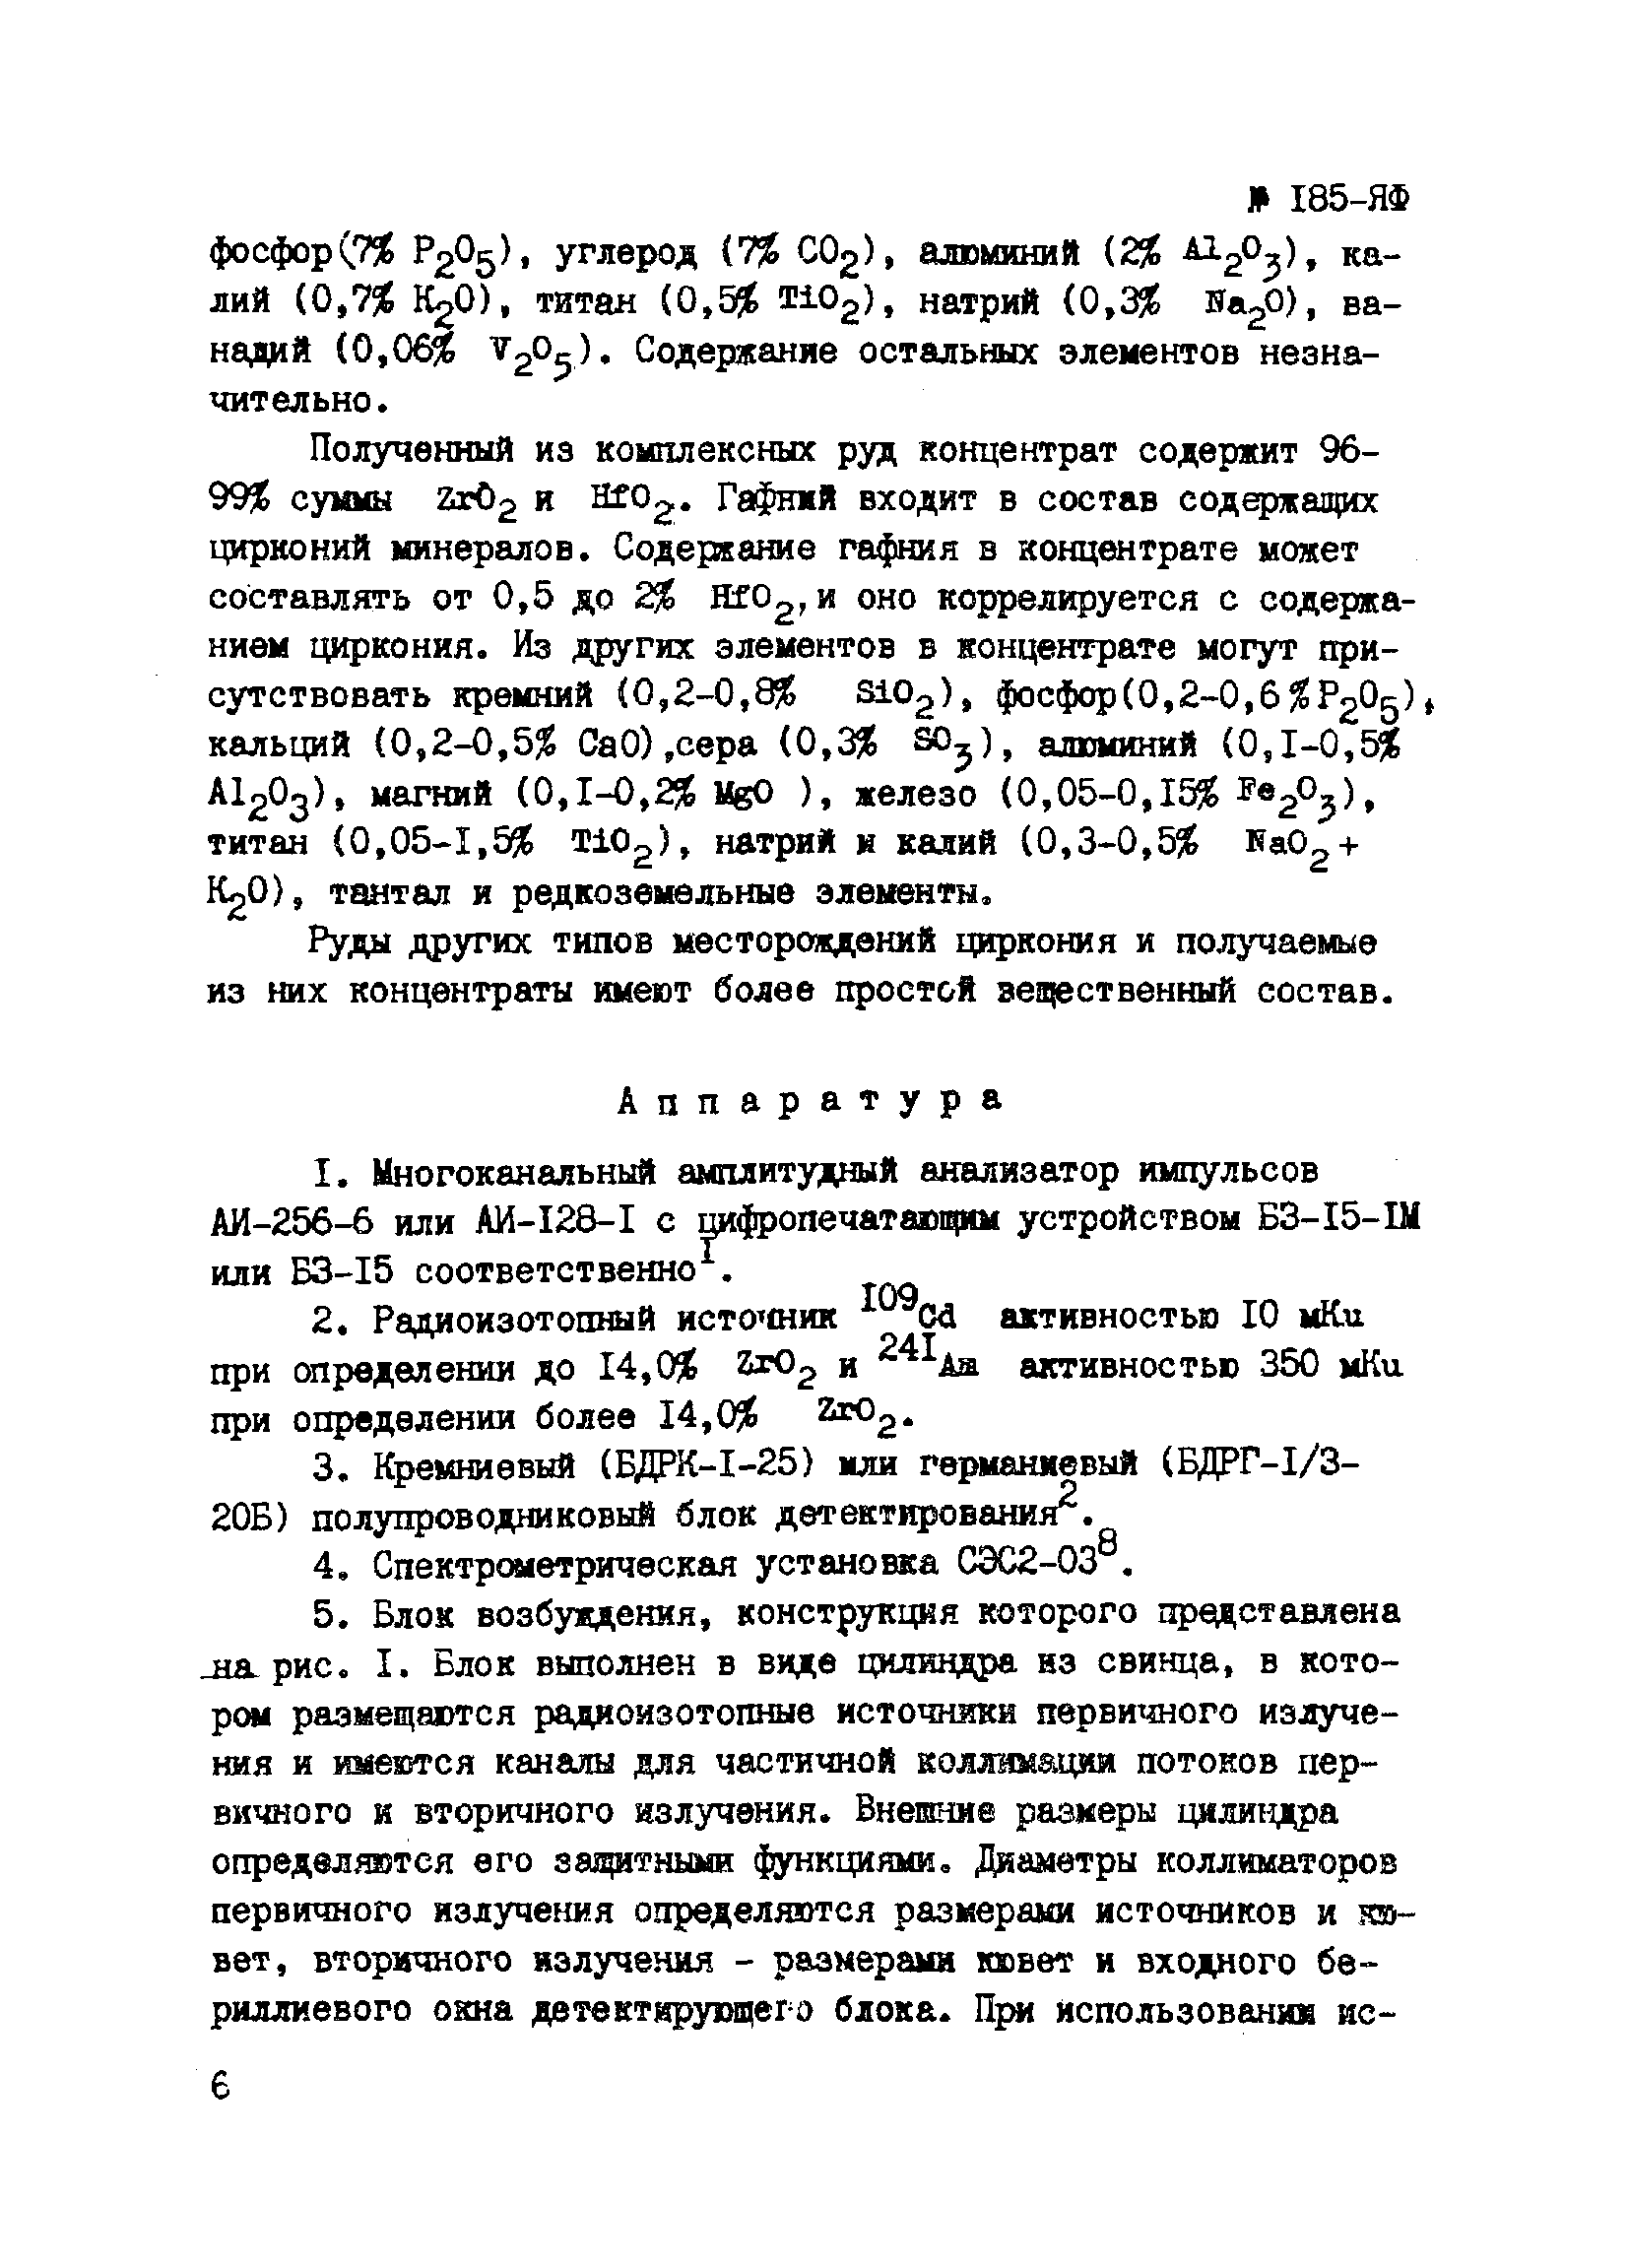 Инструкция НСАМ 185-ЯФ